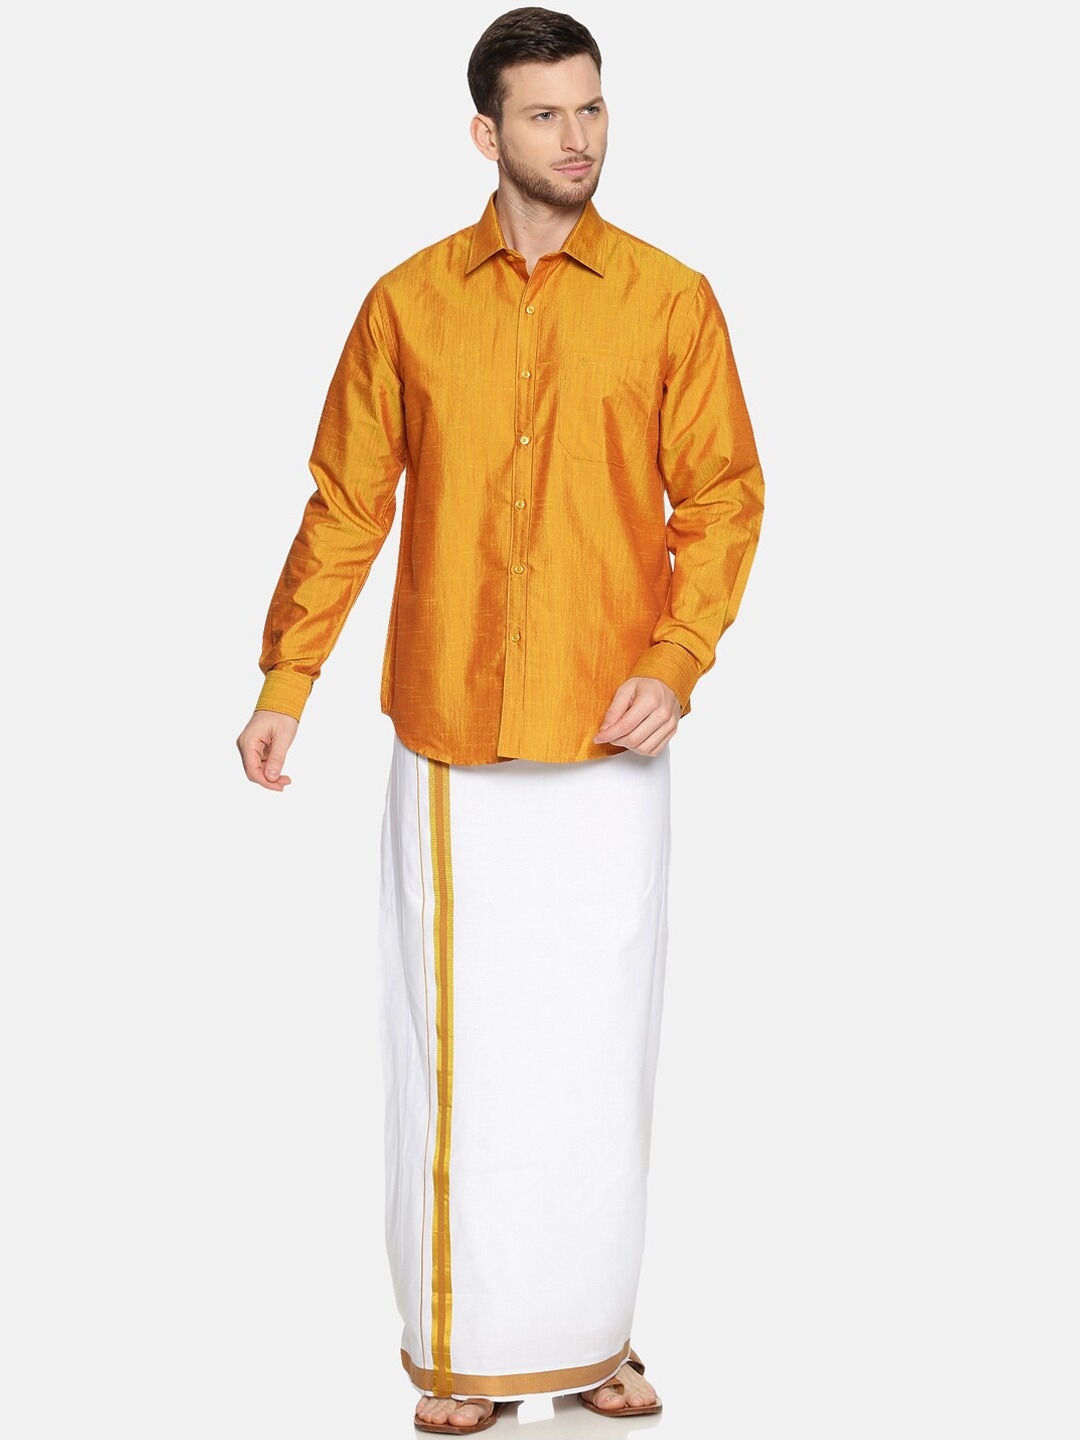 Ramraj | RAMRAJ COTTON Men Gold-Toned  White Solid Shirt  Dhoti Set